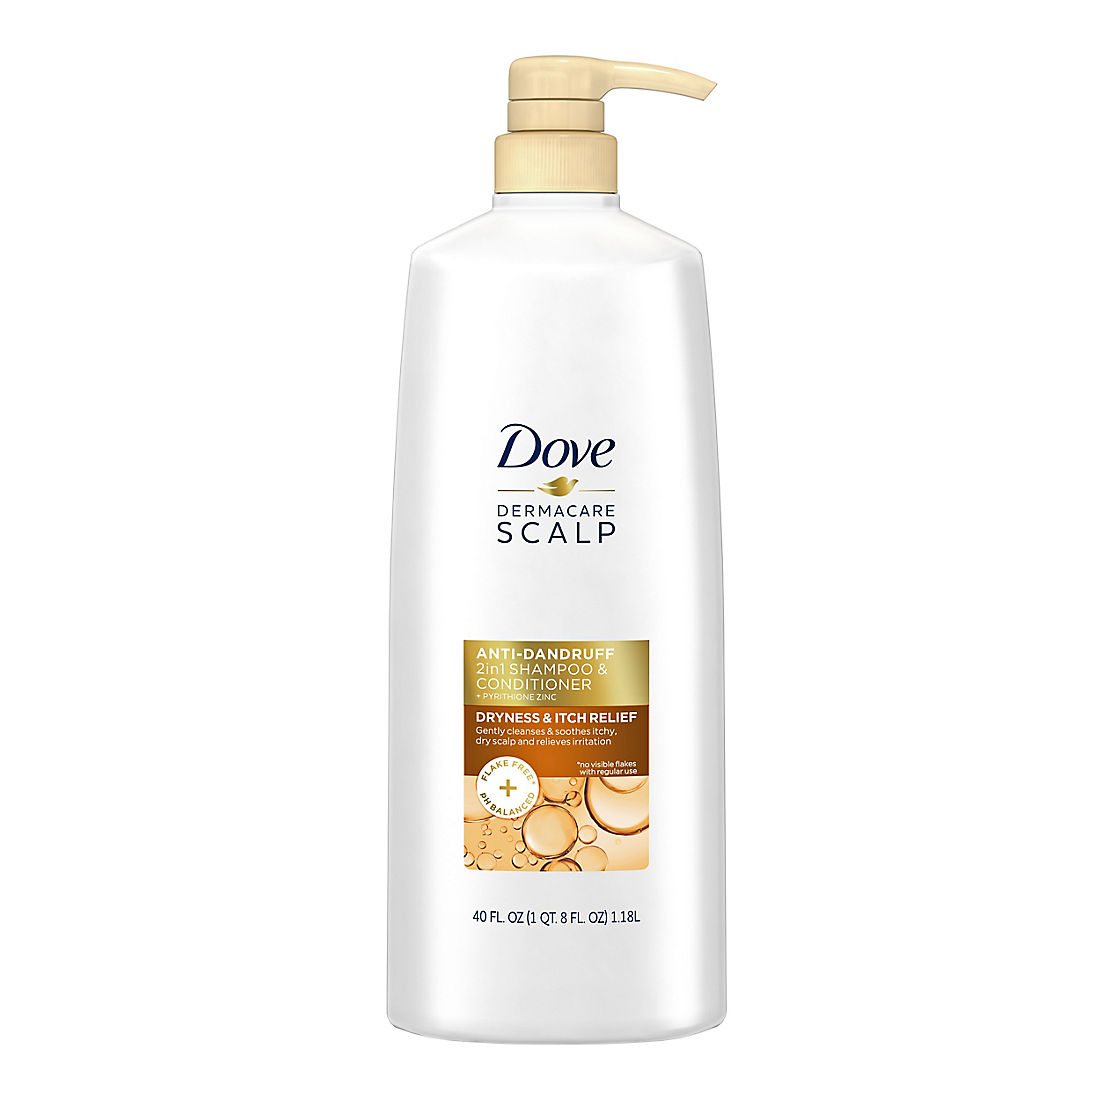 Dove Dermacare Scalp Anti Dandruff Shampoo And Conditioner 40 Fl Oz Bjs Wholesale Club